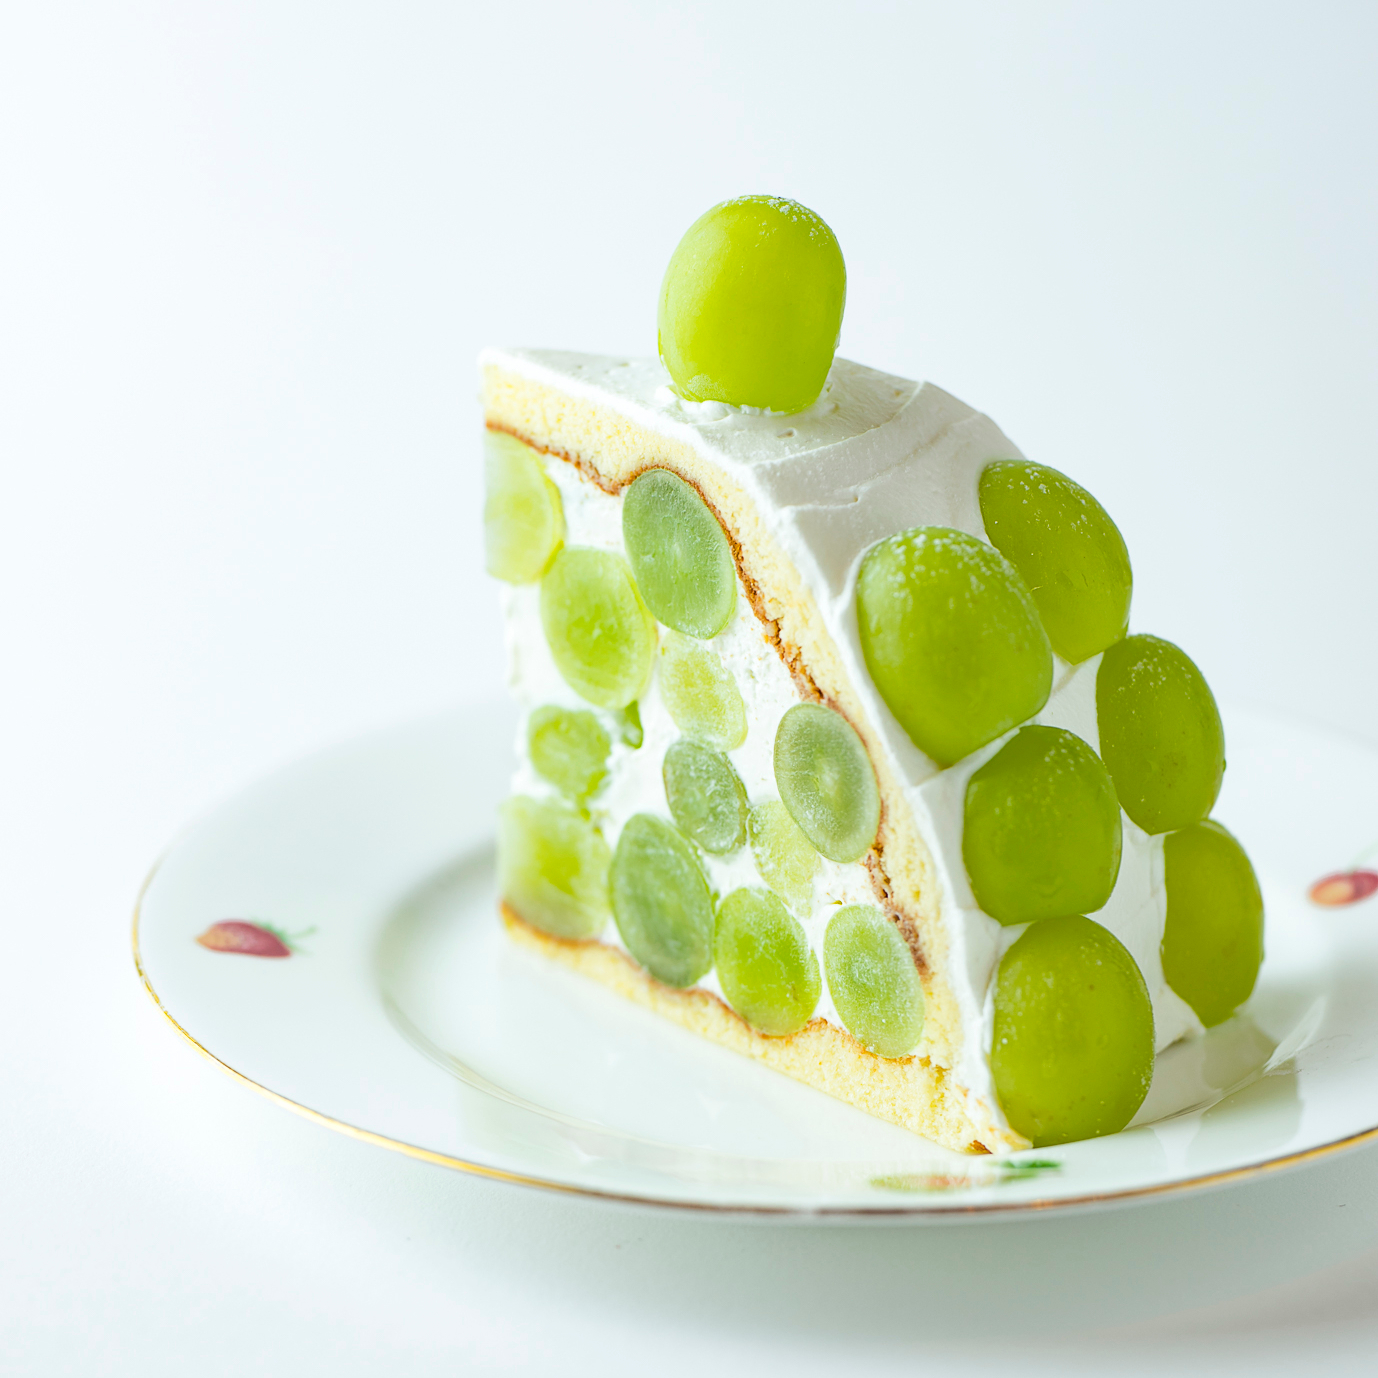 15粒以上がのった贅沢シャインマスカットケーキも 渋谷ヒカリエ の年おすすめテイクアウト イートイン8選 Food Hanako Tokyo